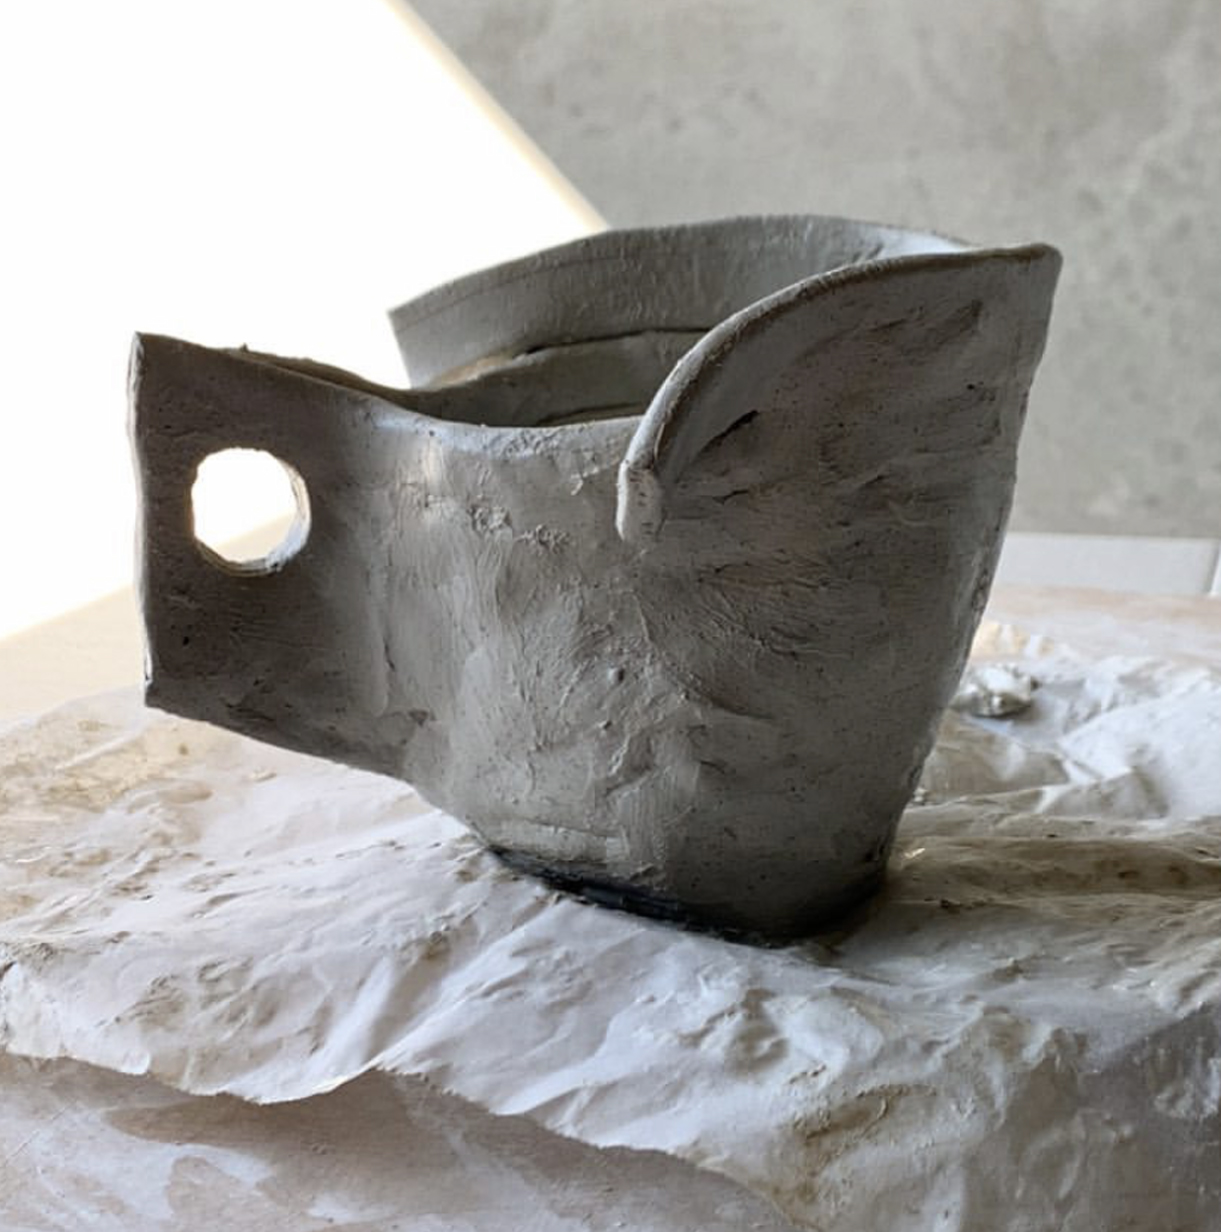 Ceramic cup by Ben Mazey